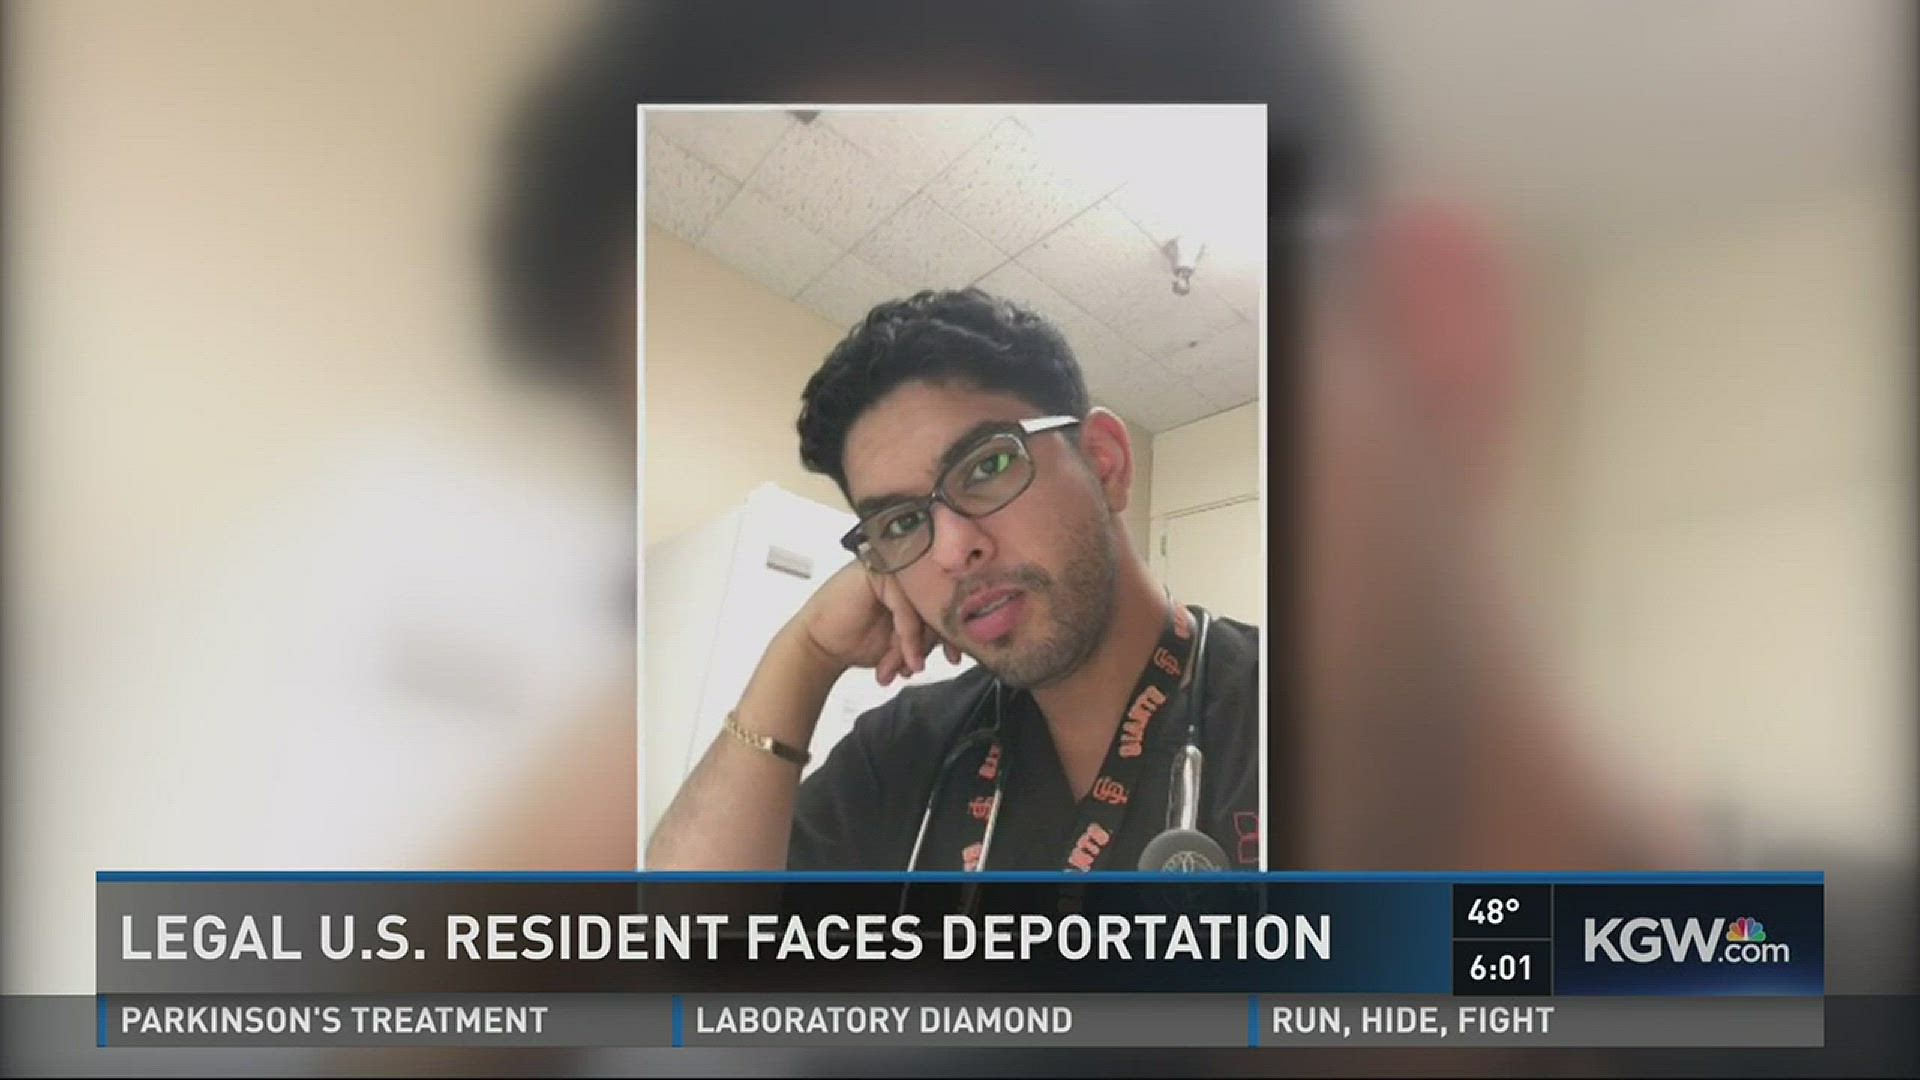 Legal U.S. resident faces deportation